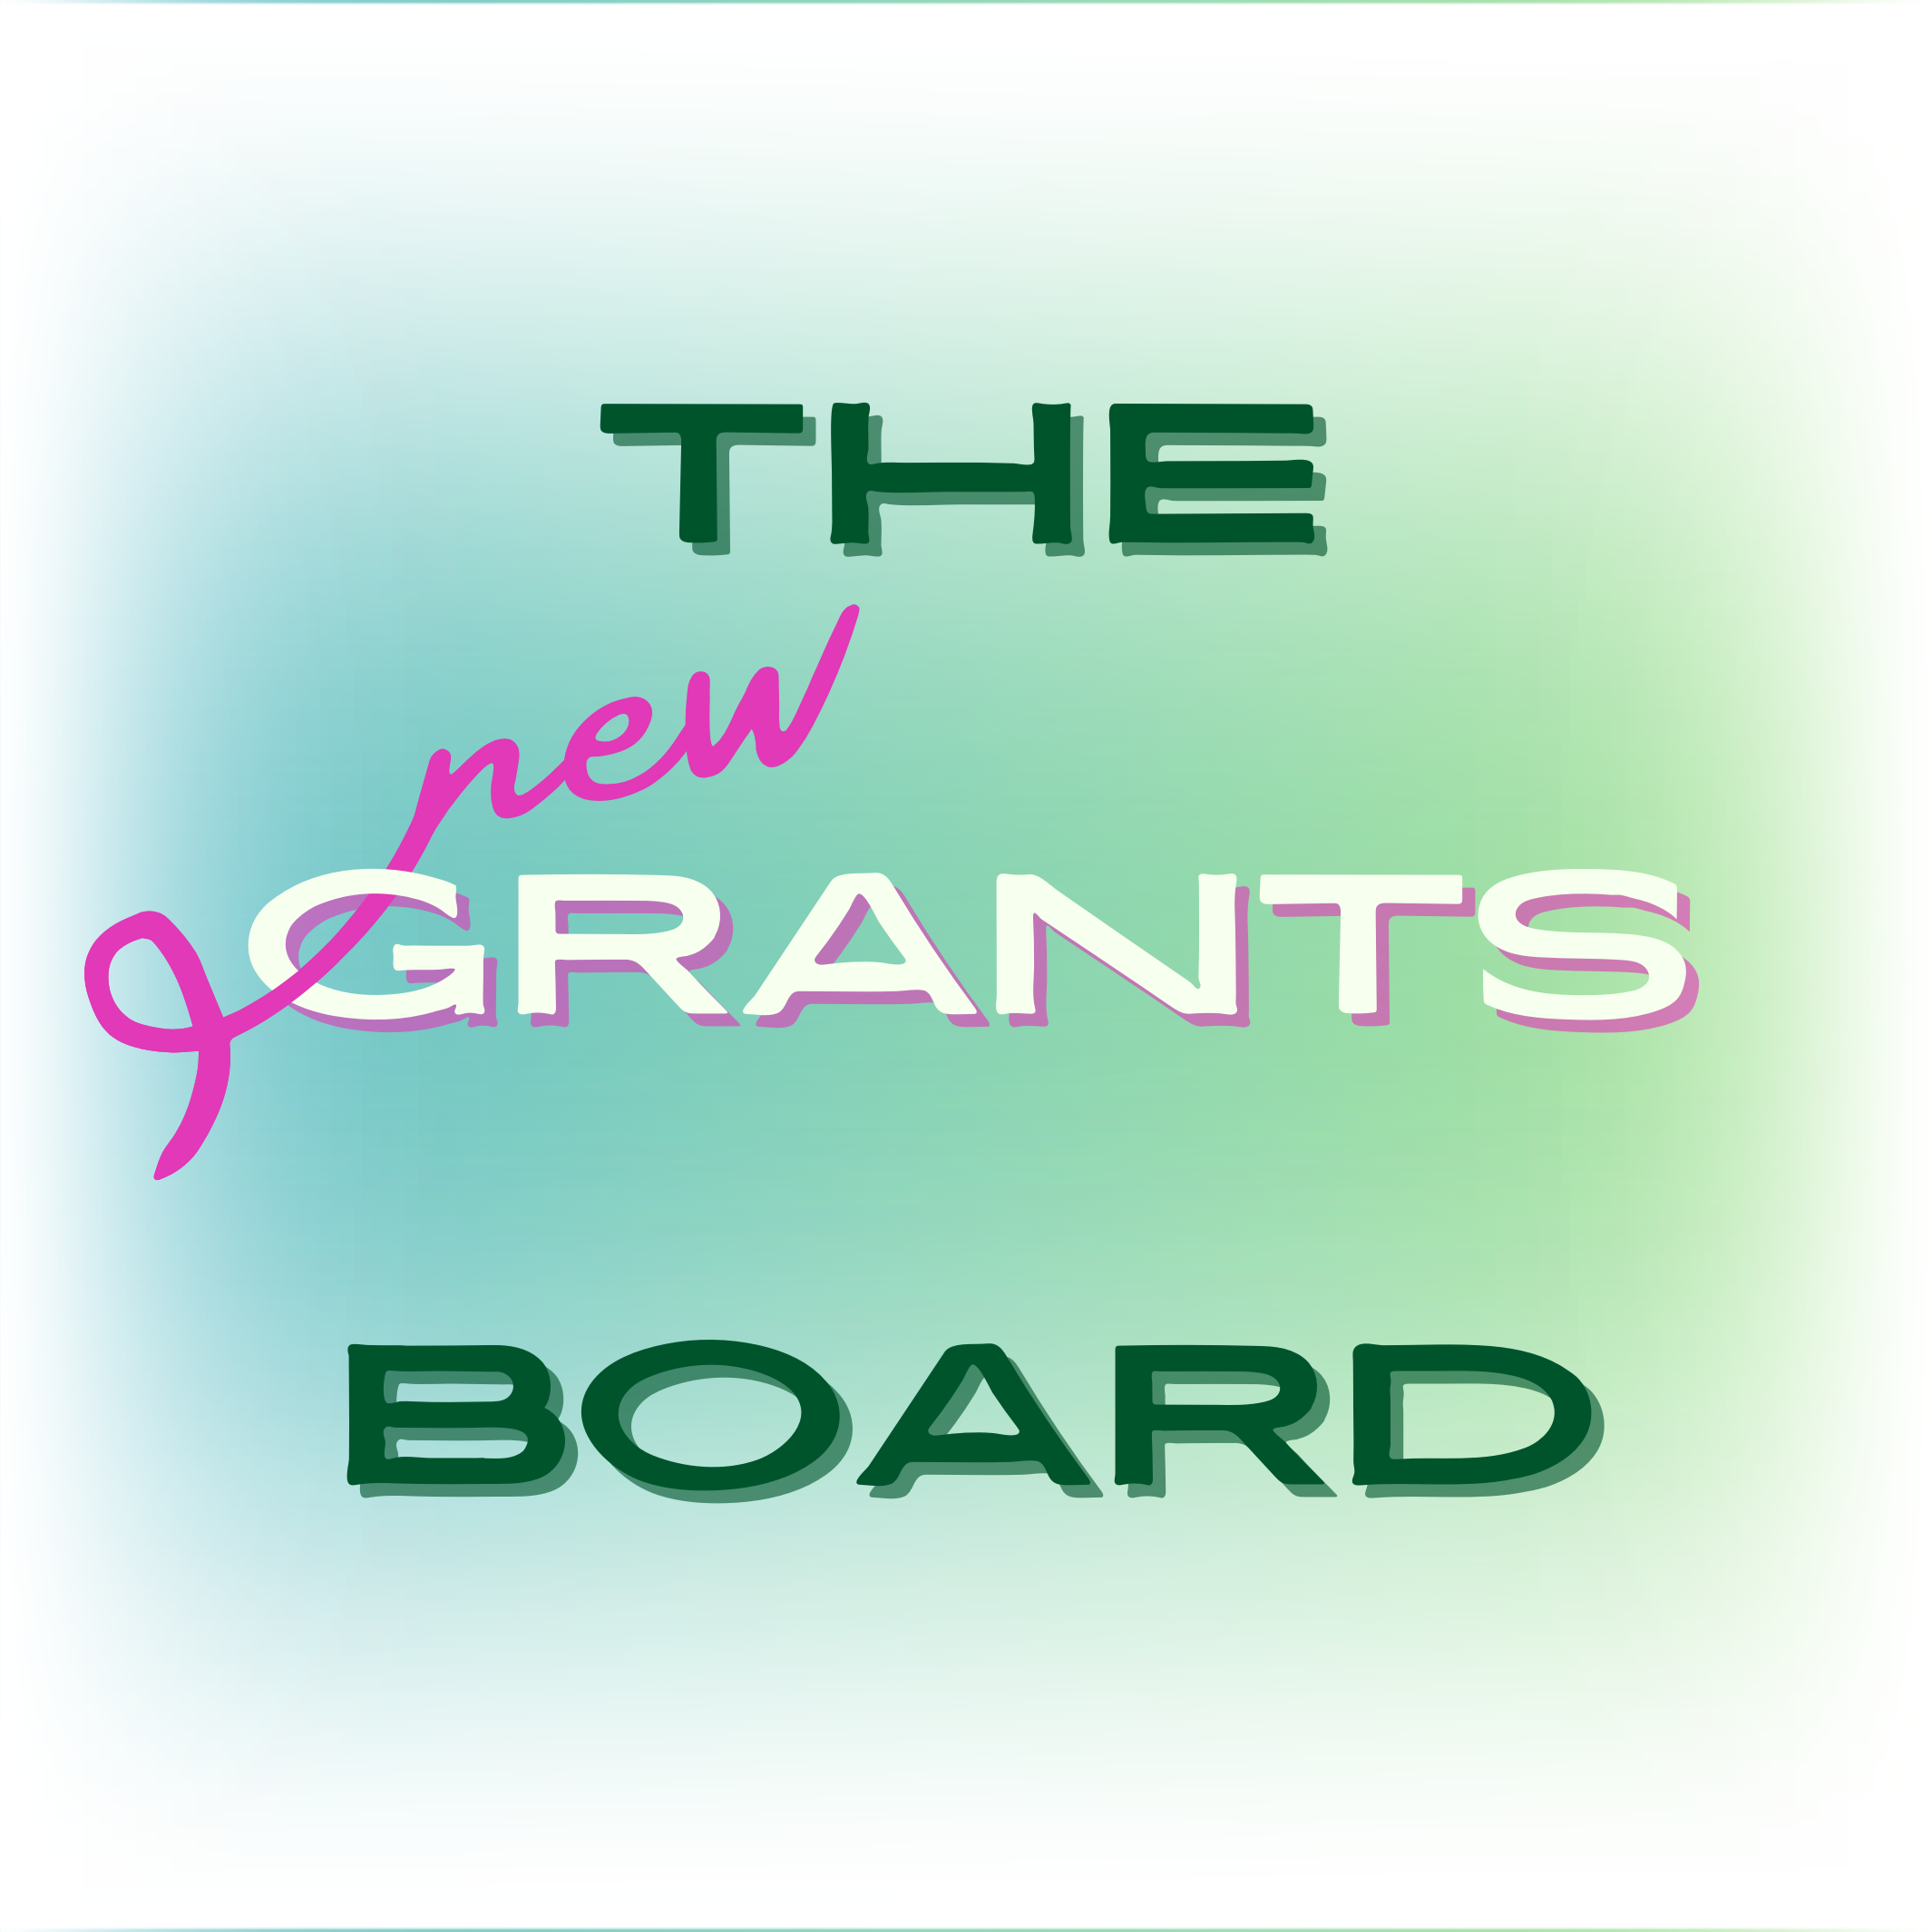 Grants Board announcement